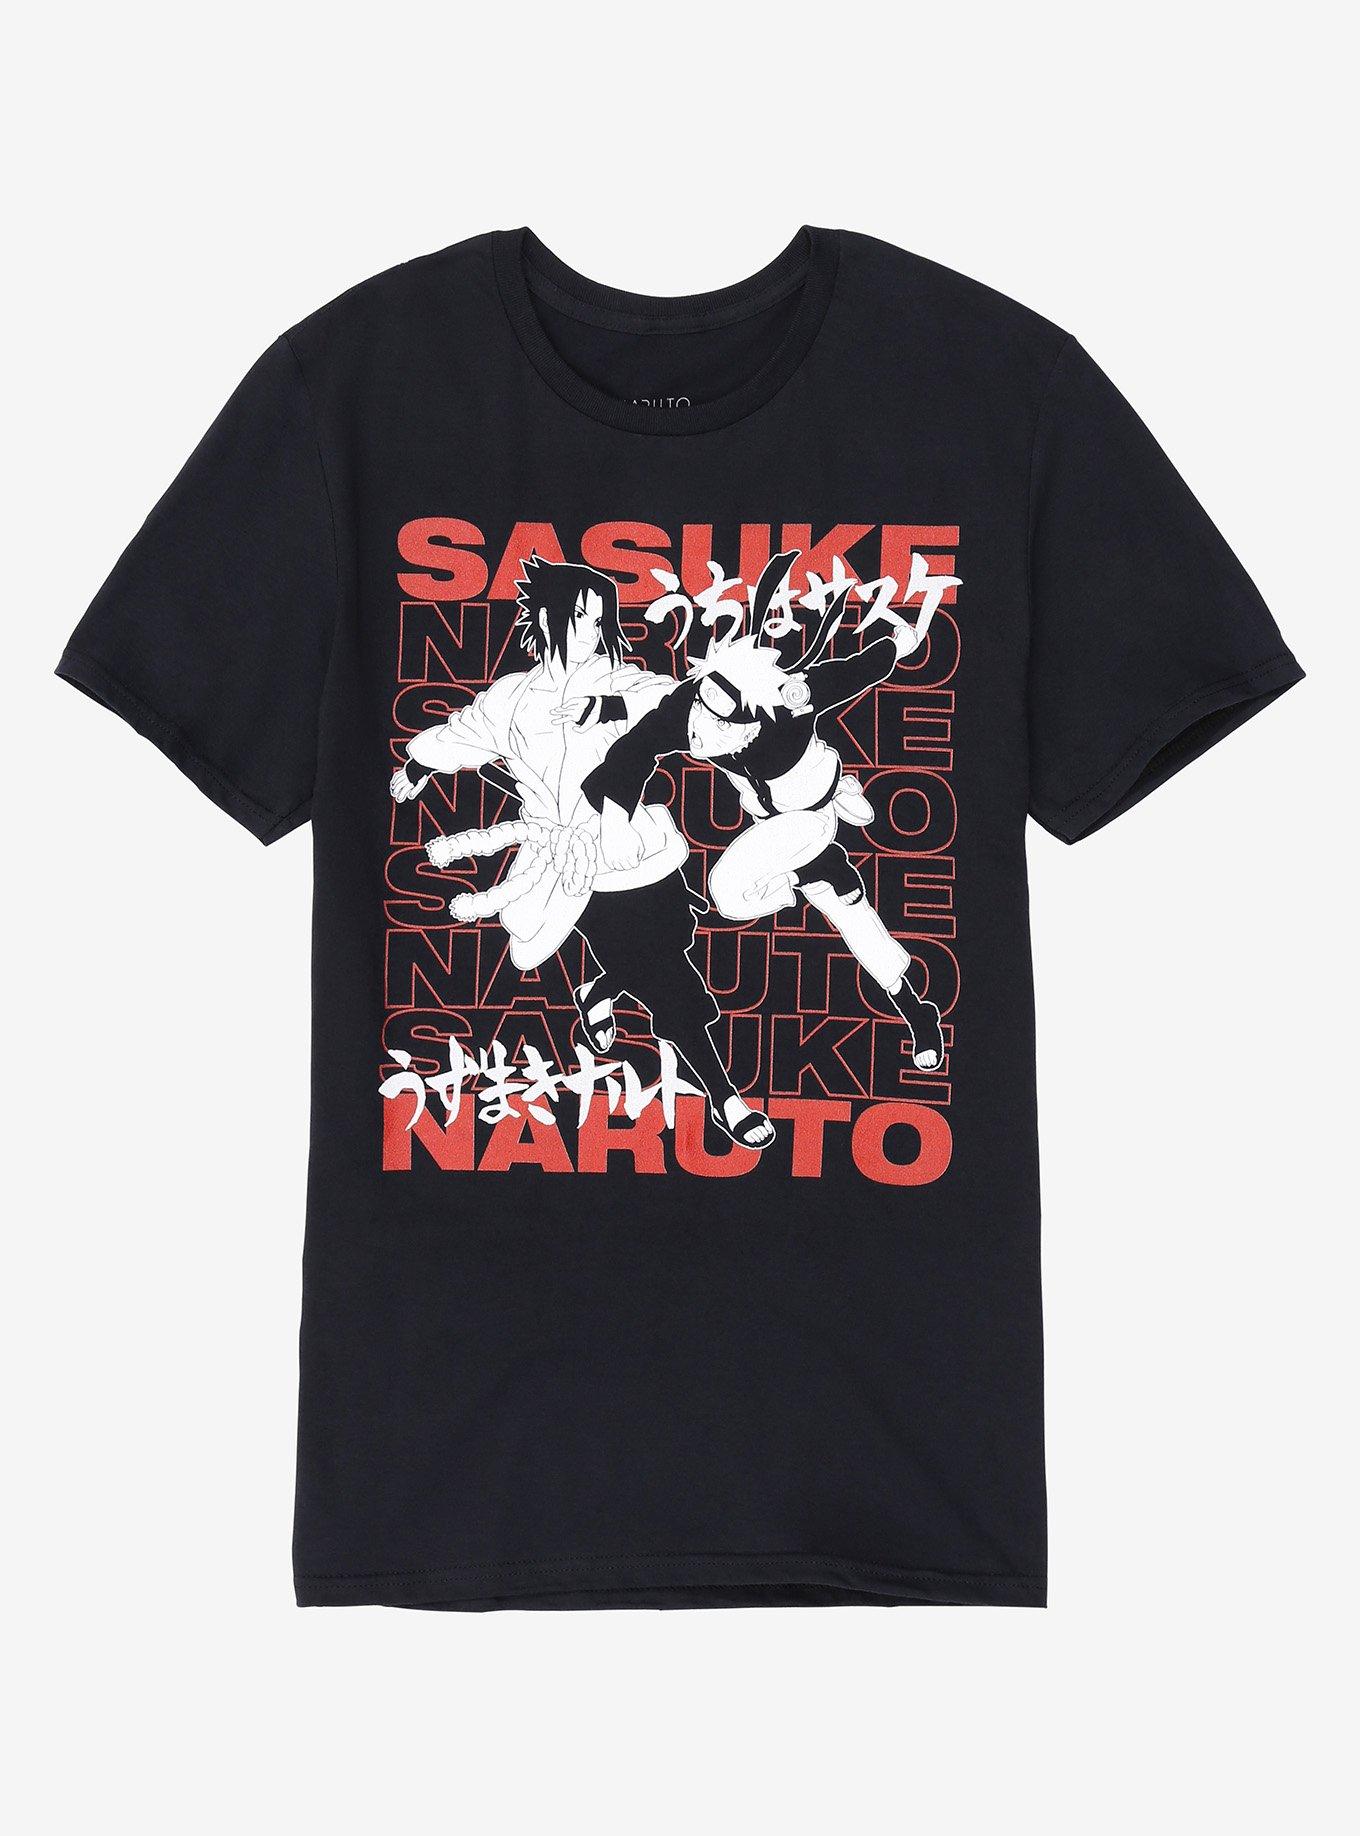 Naruto Shippuden Naruto Vs Sasuke T-Shirt, BLACK, hi-res